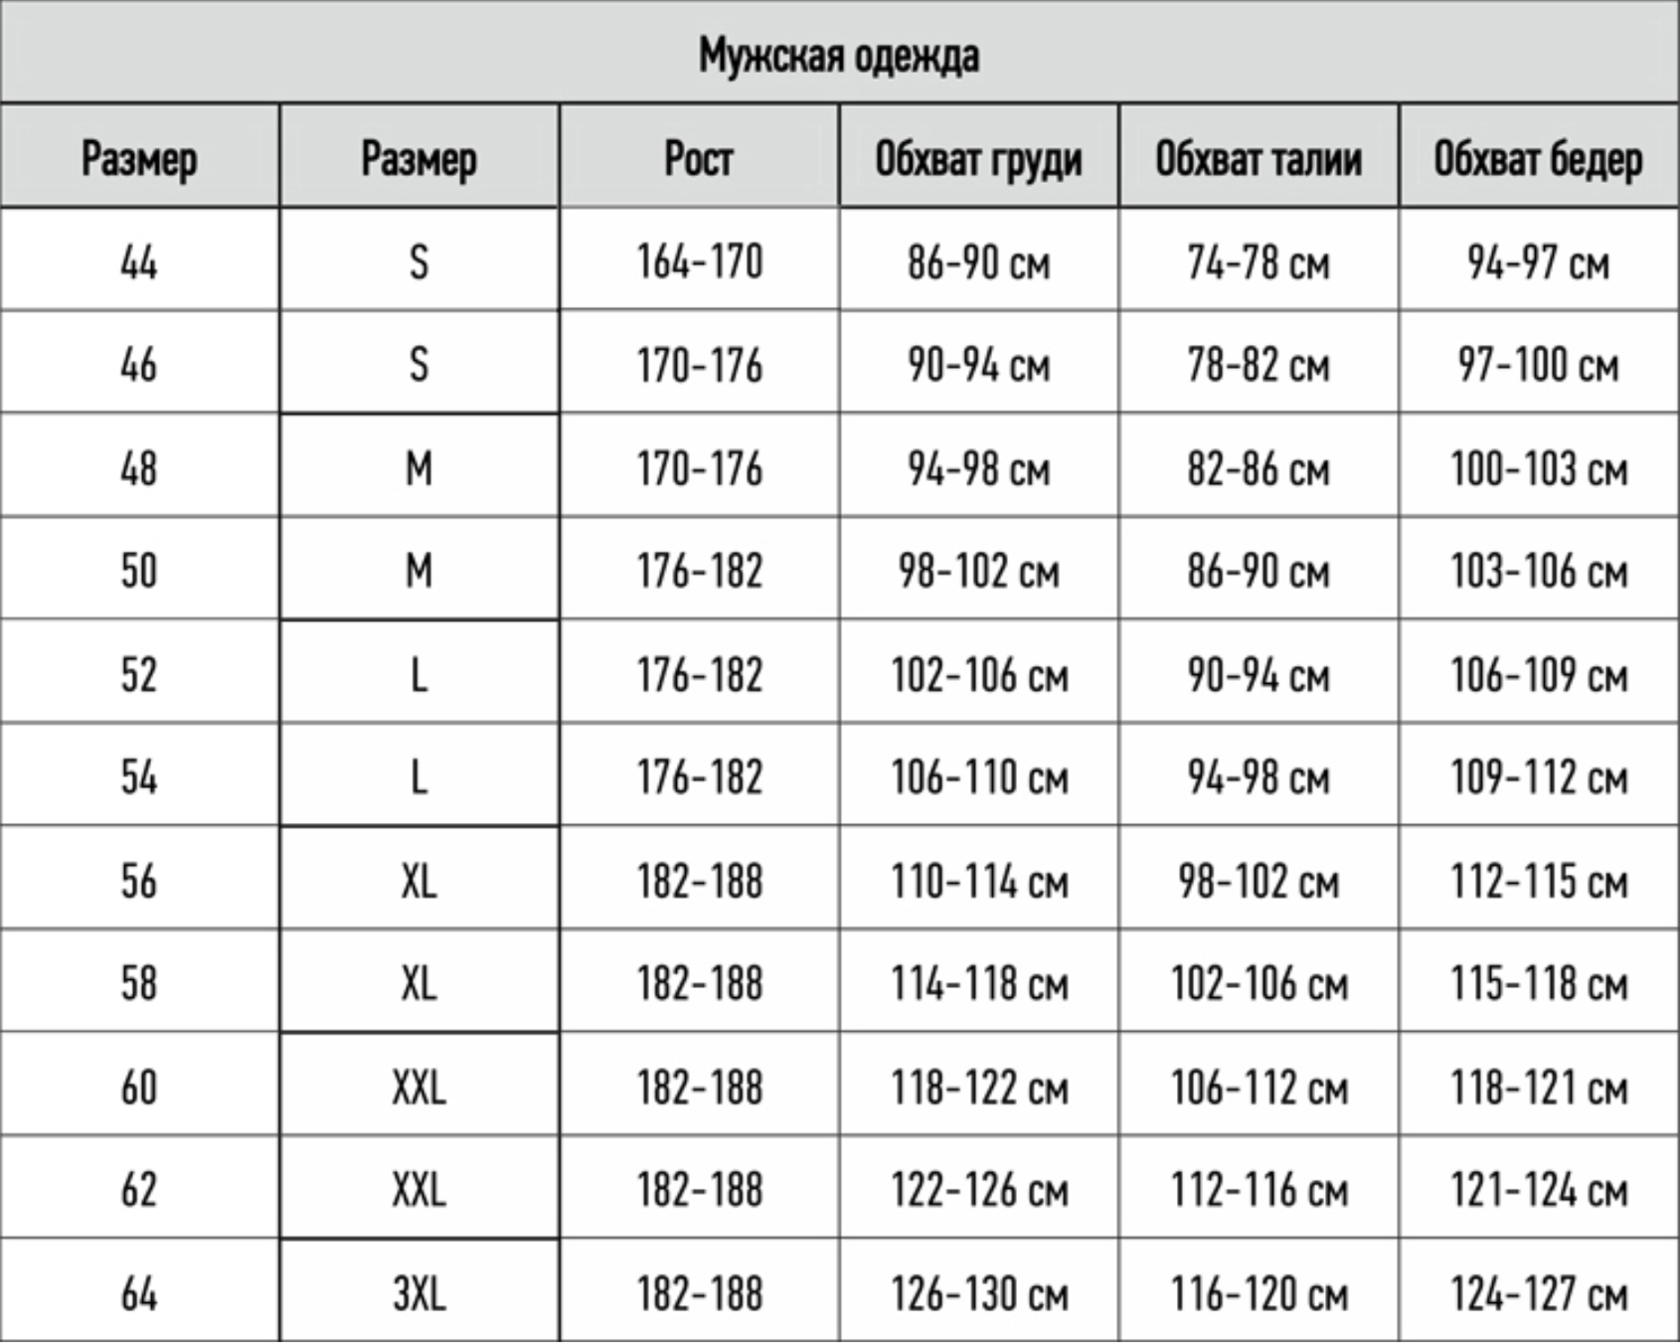 таблица размеров груди по россии фото 45